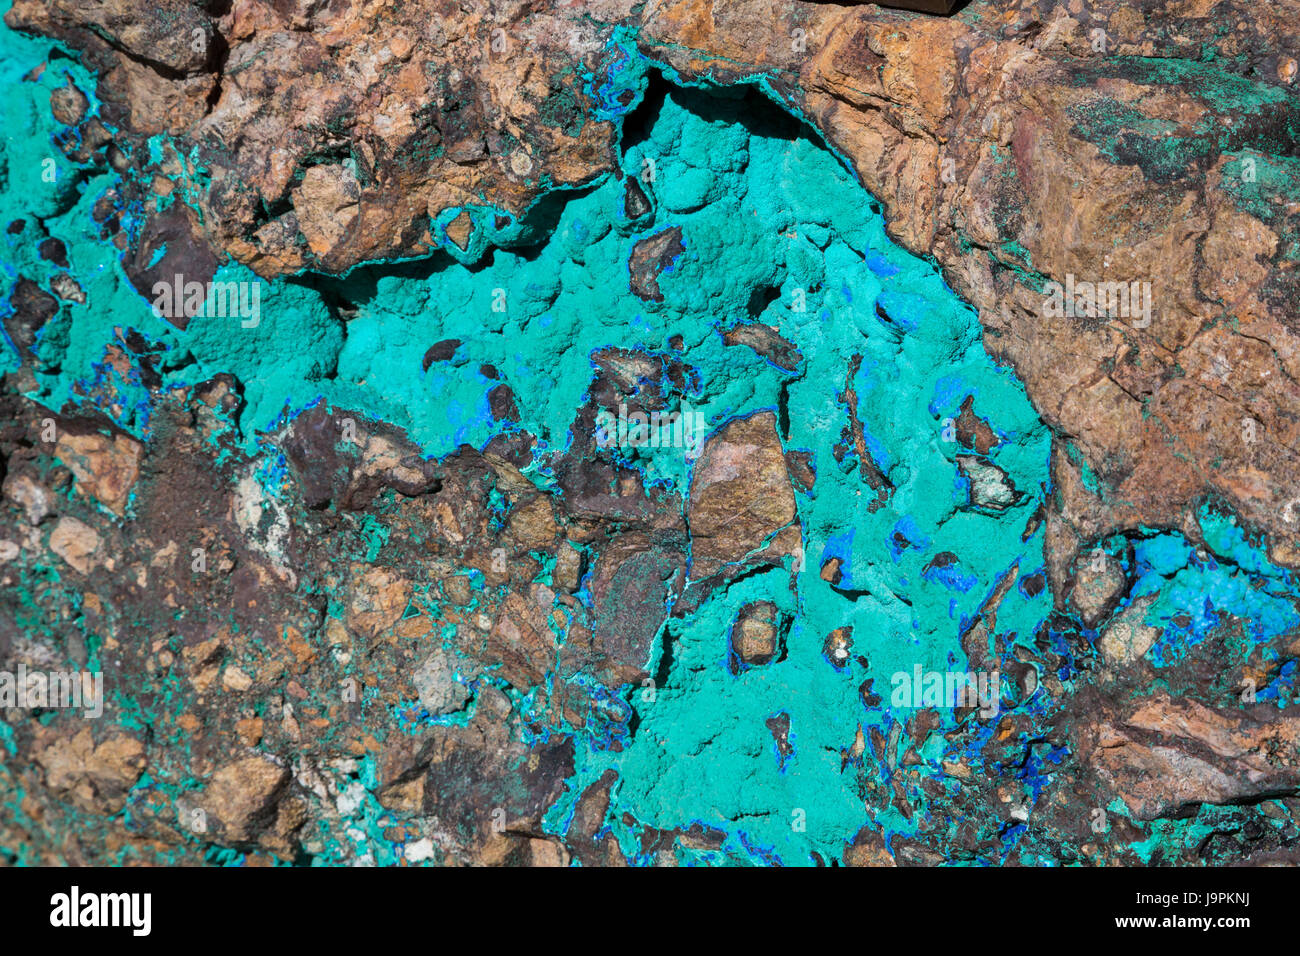 Oracle, Arizona - una roccia visualizzazione malachite (verde) e azurite (blu) minerali sul display esterno Biosphere 2. Entrambi sono il carbonato di rame minerali. Foto Stock